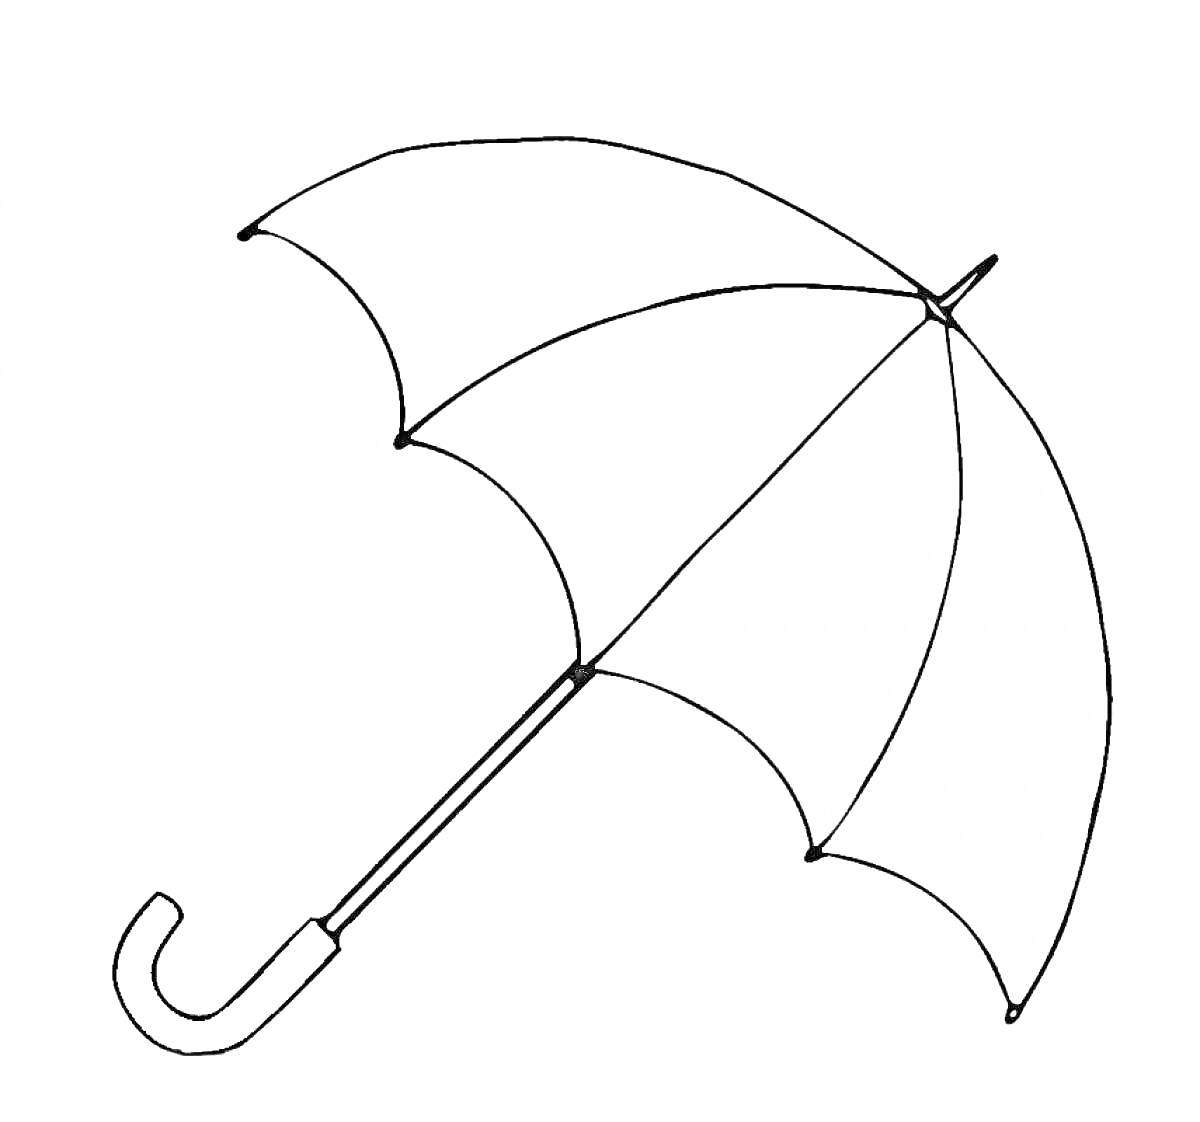 Раскраска Черно-белая раскраска зонтика с дугообразной ручкой и шестью сегментами